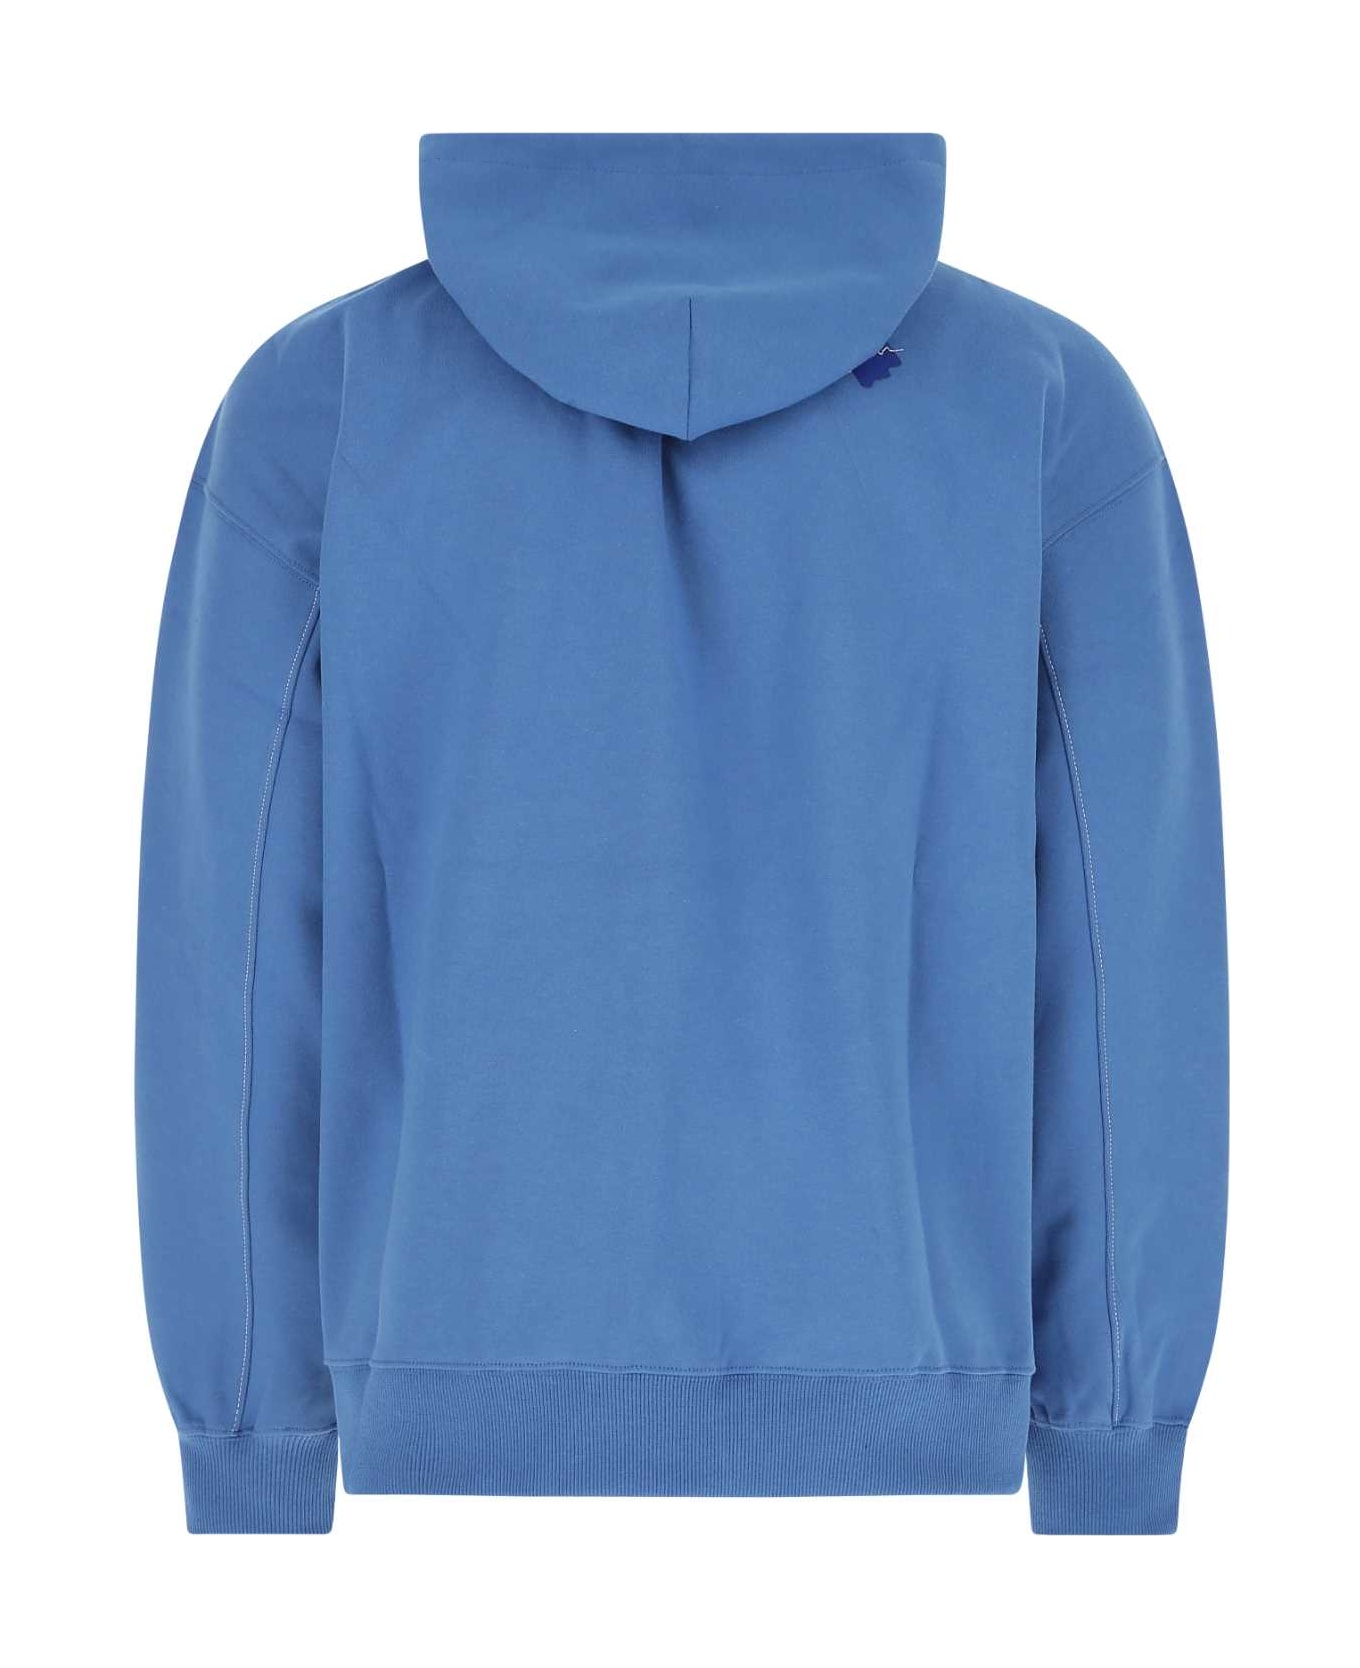 Ader Error Cerulean Blue Cotton Blend Sweatshirt - BLUE